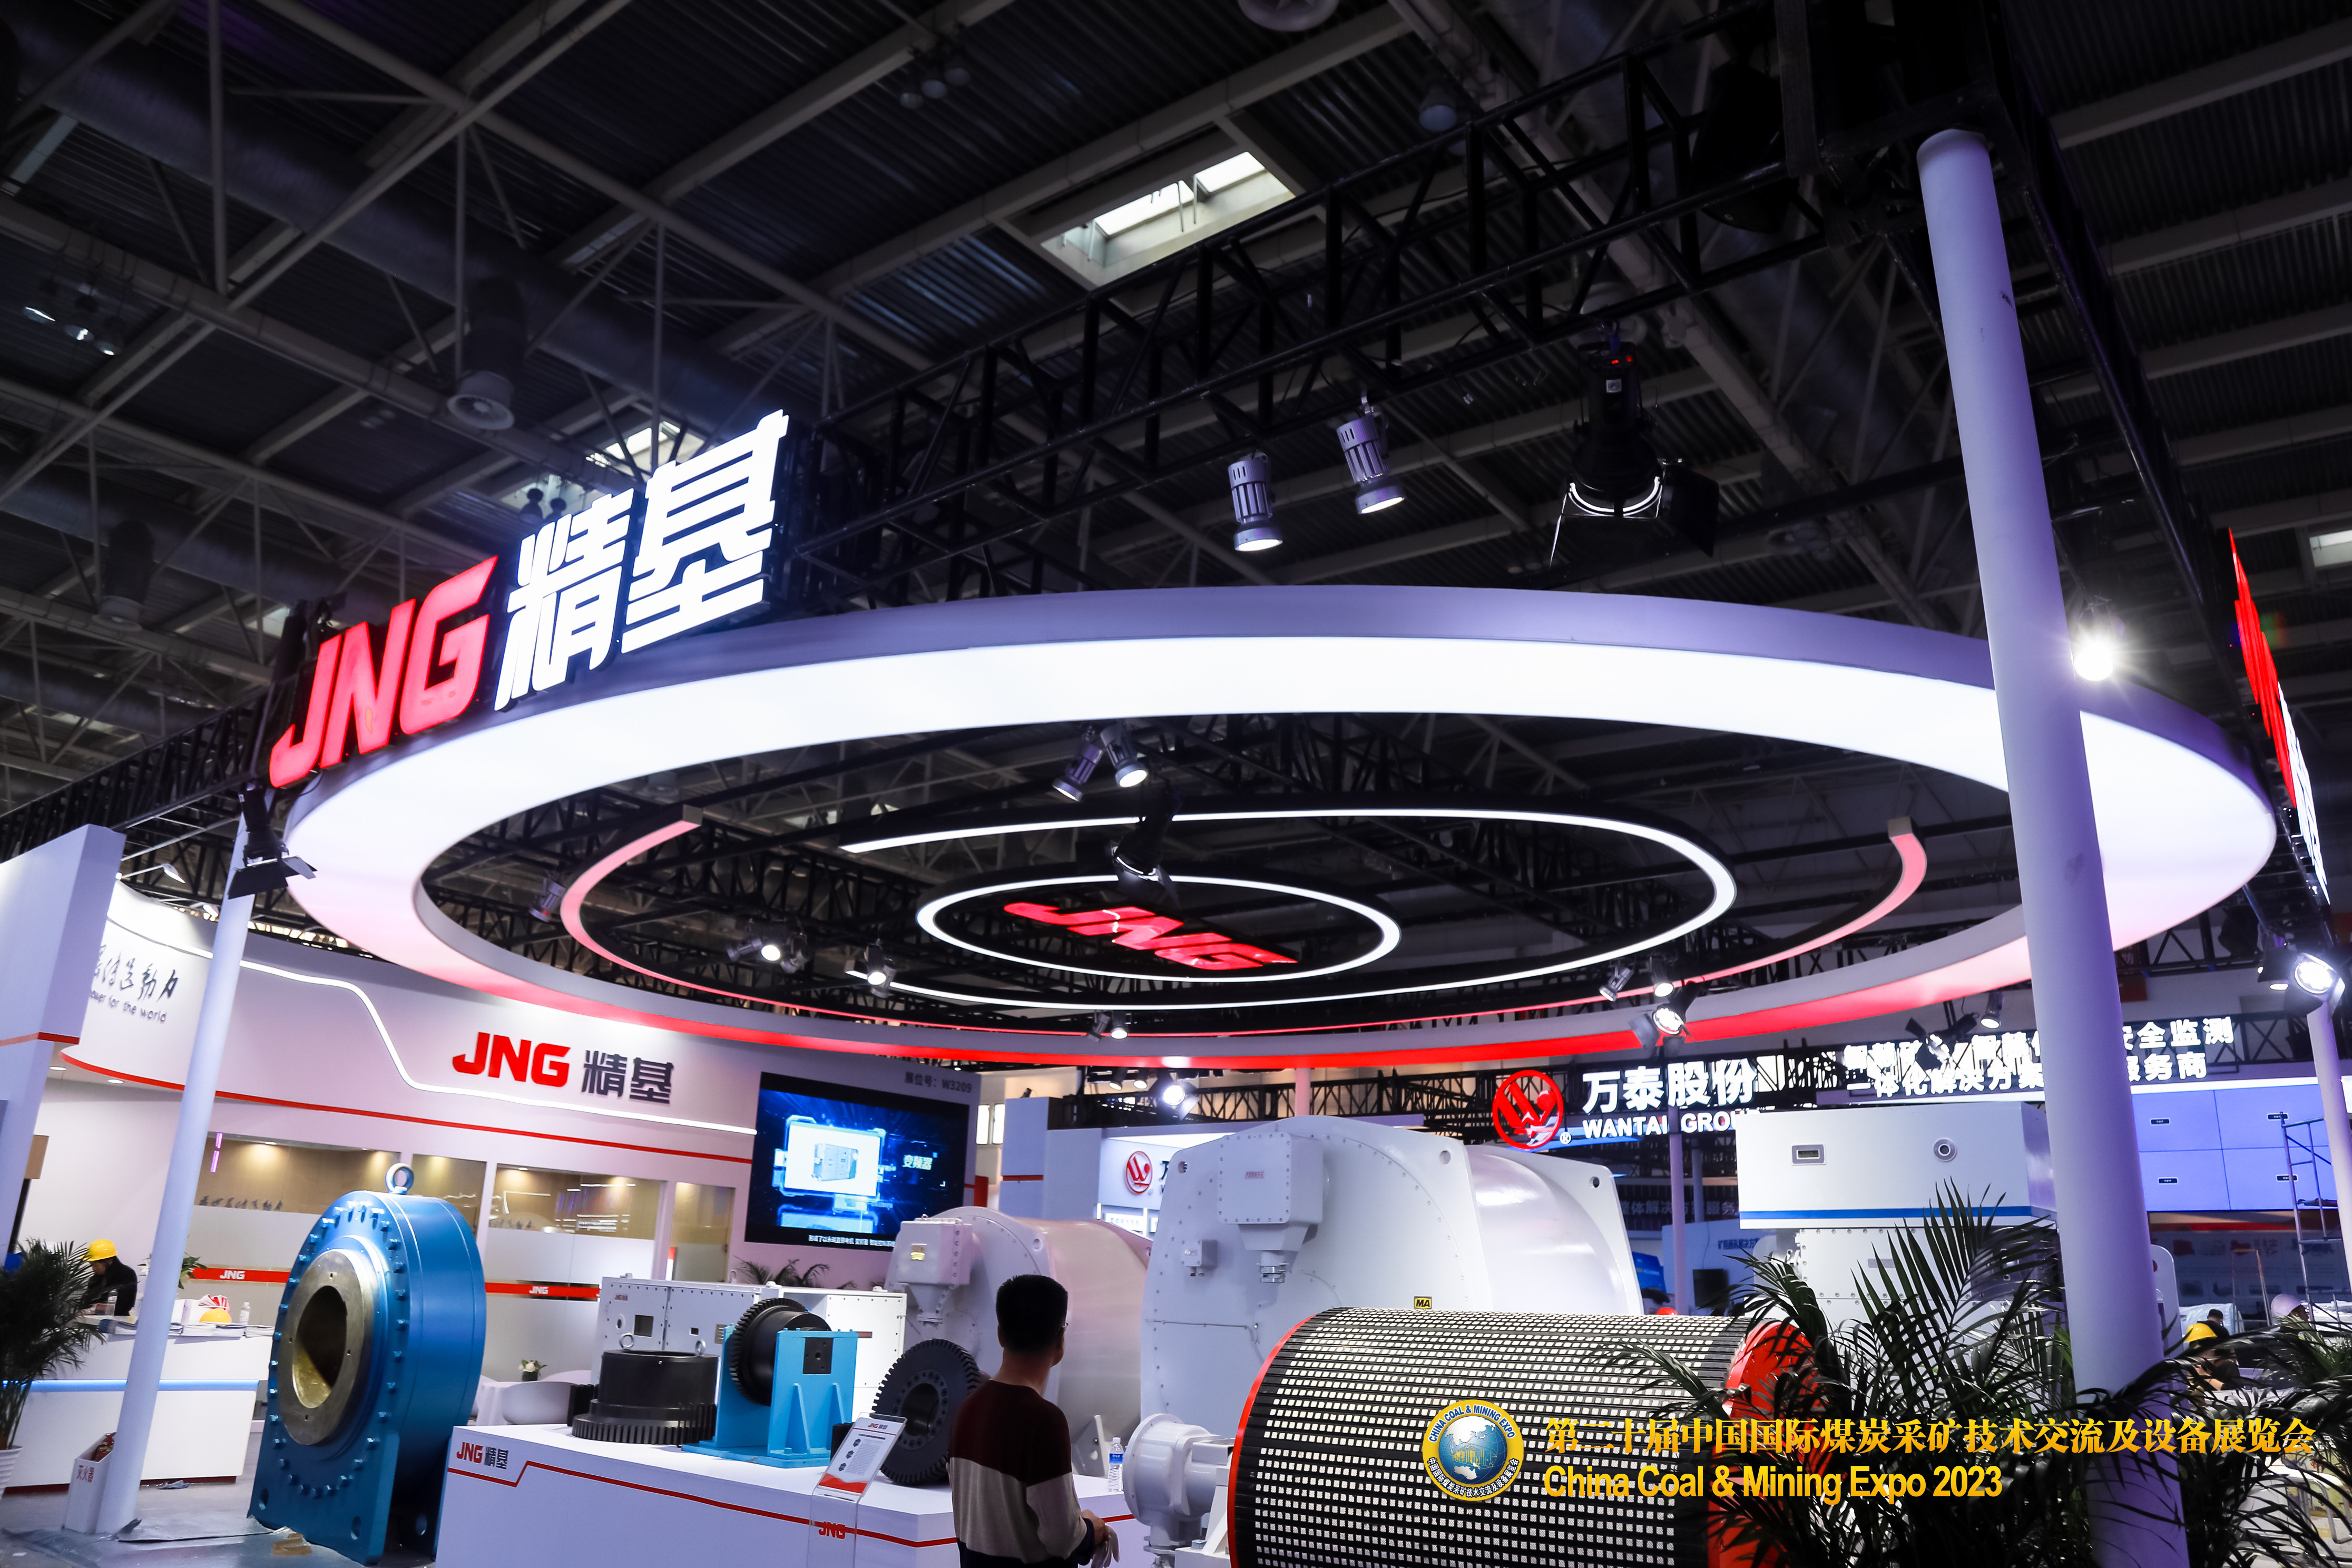 展会回顾 | 金沙线上js5登录入口第二十届中国国际煤炭采矿技术交流及设备展览会圆满落幕